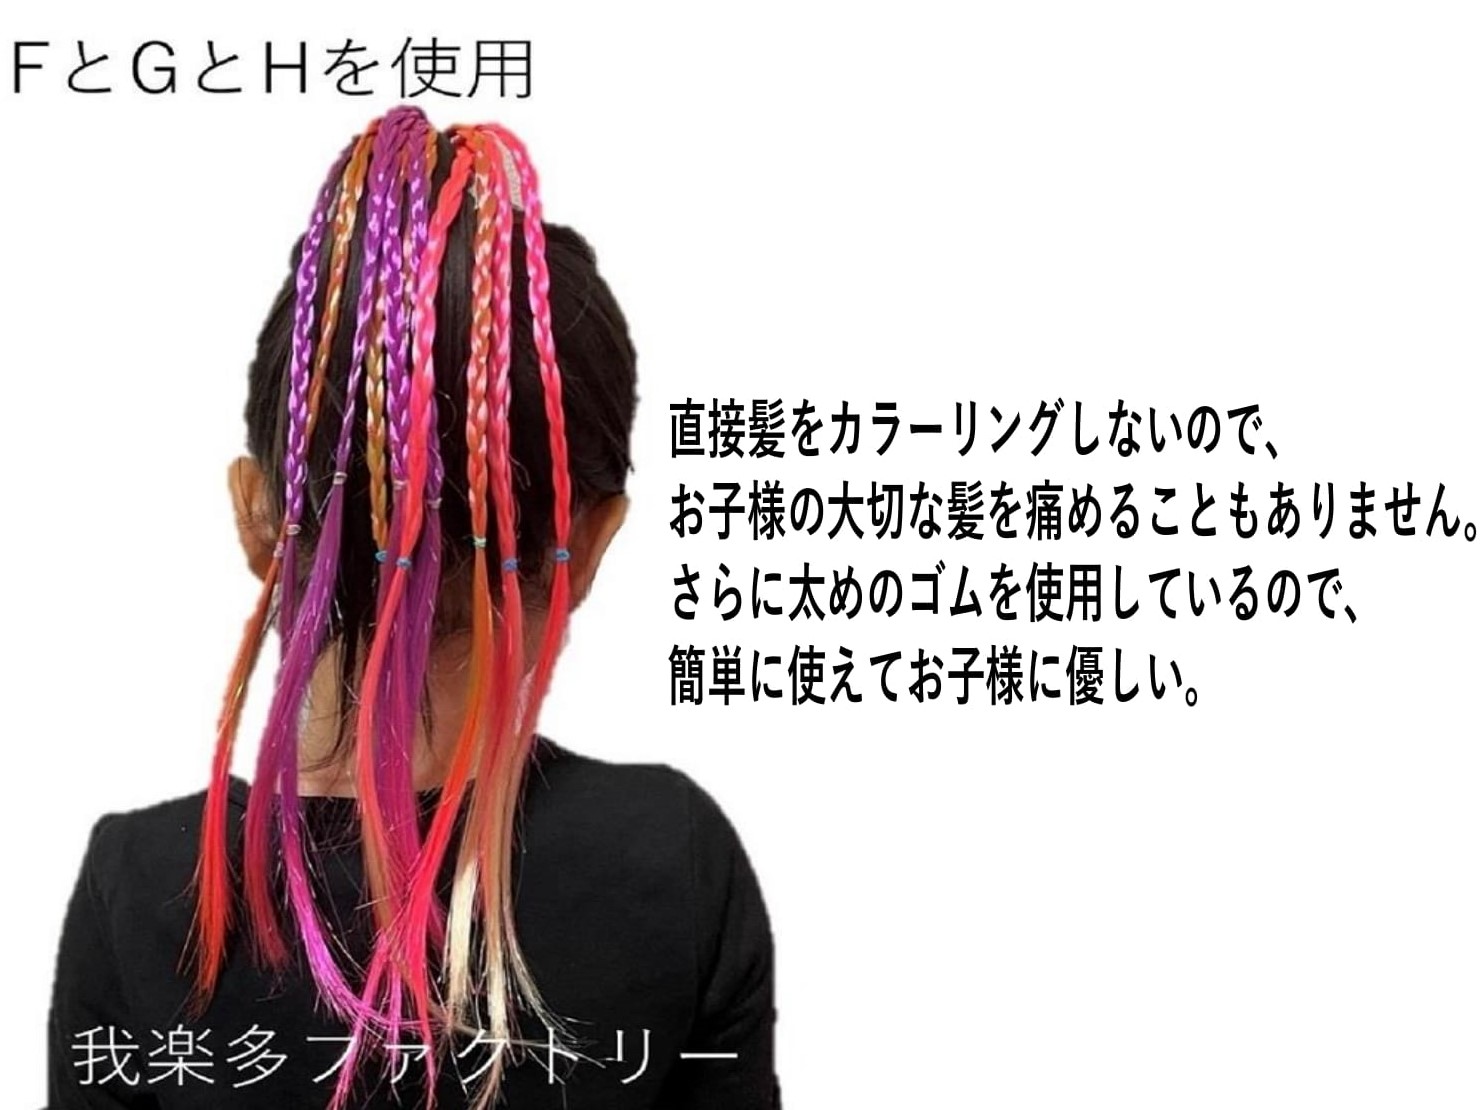  Dance Kids . type волосы стиль волосы организовать резинка для волос ek стерео красочный аксессуары для волос hip-hop мода три плетеный вязаный сетка ребенок 